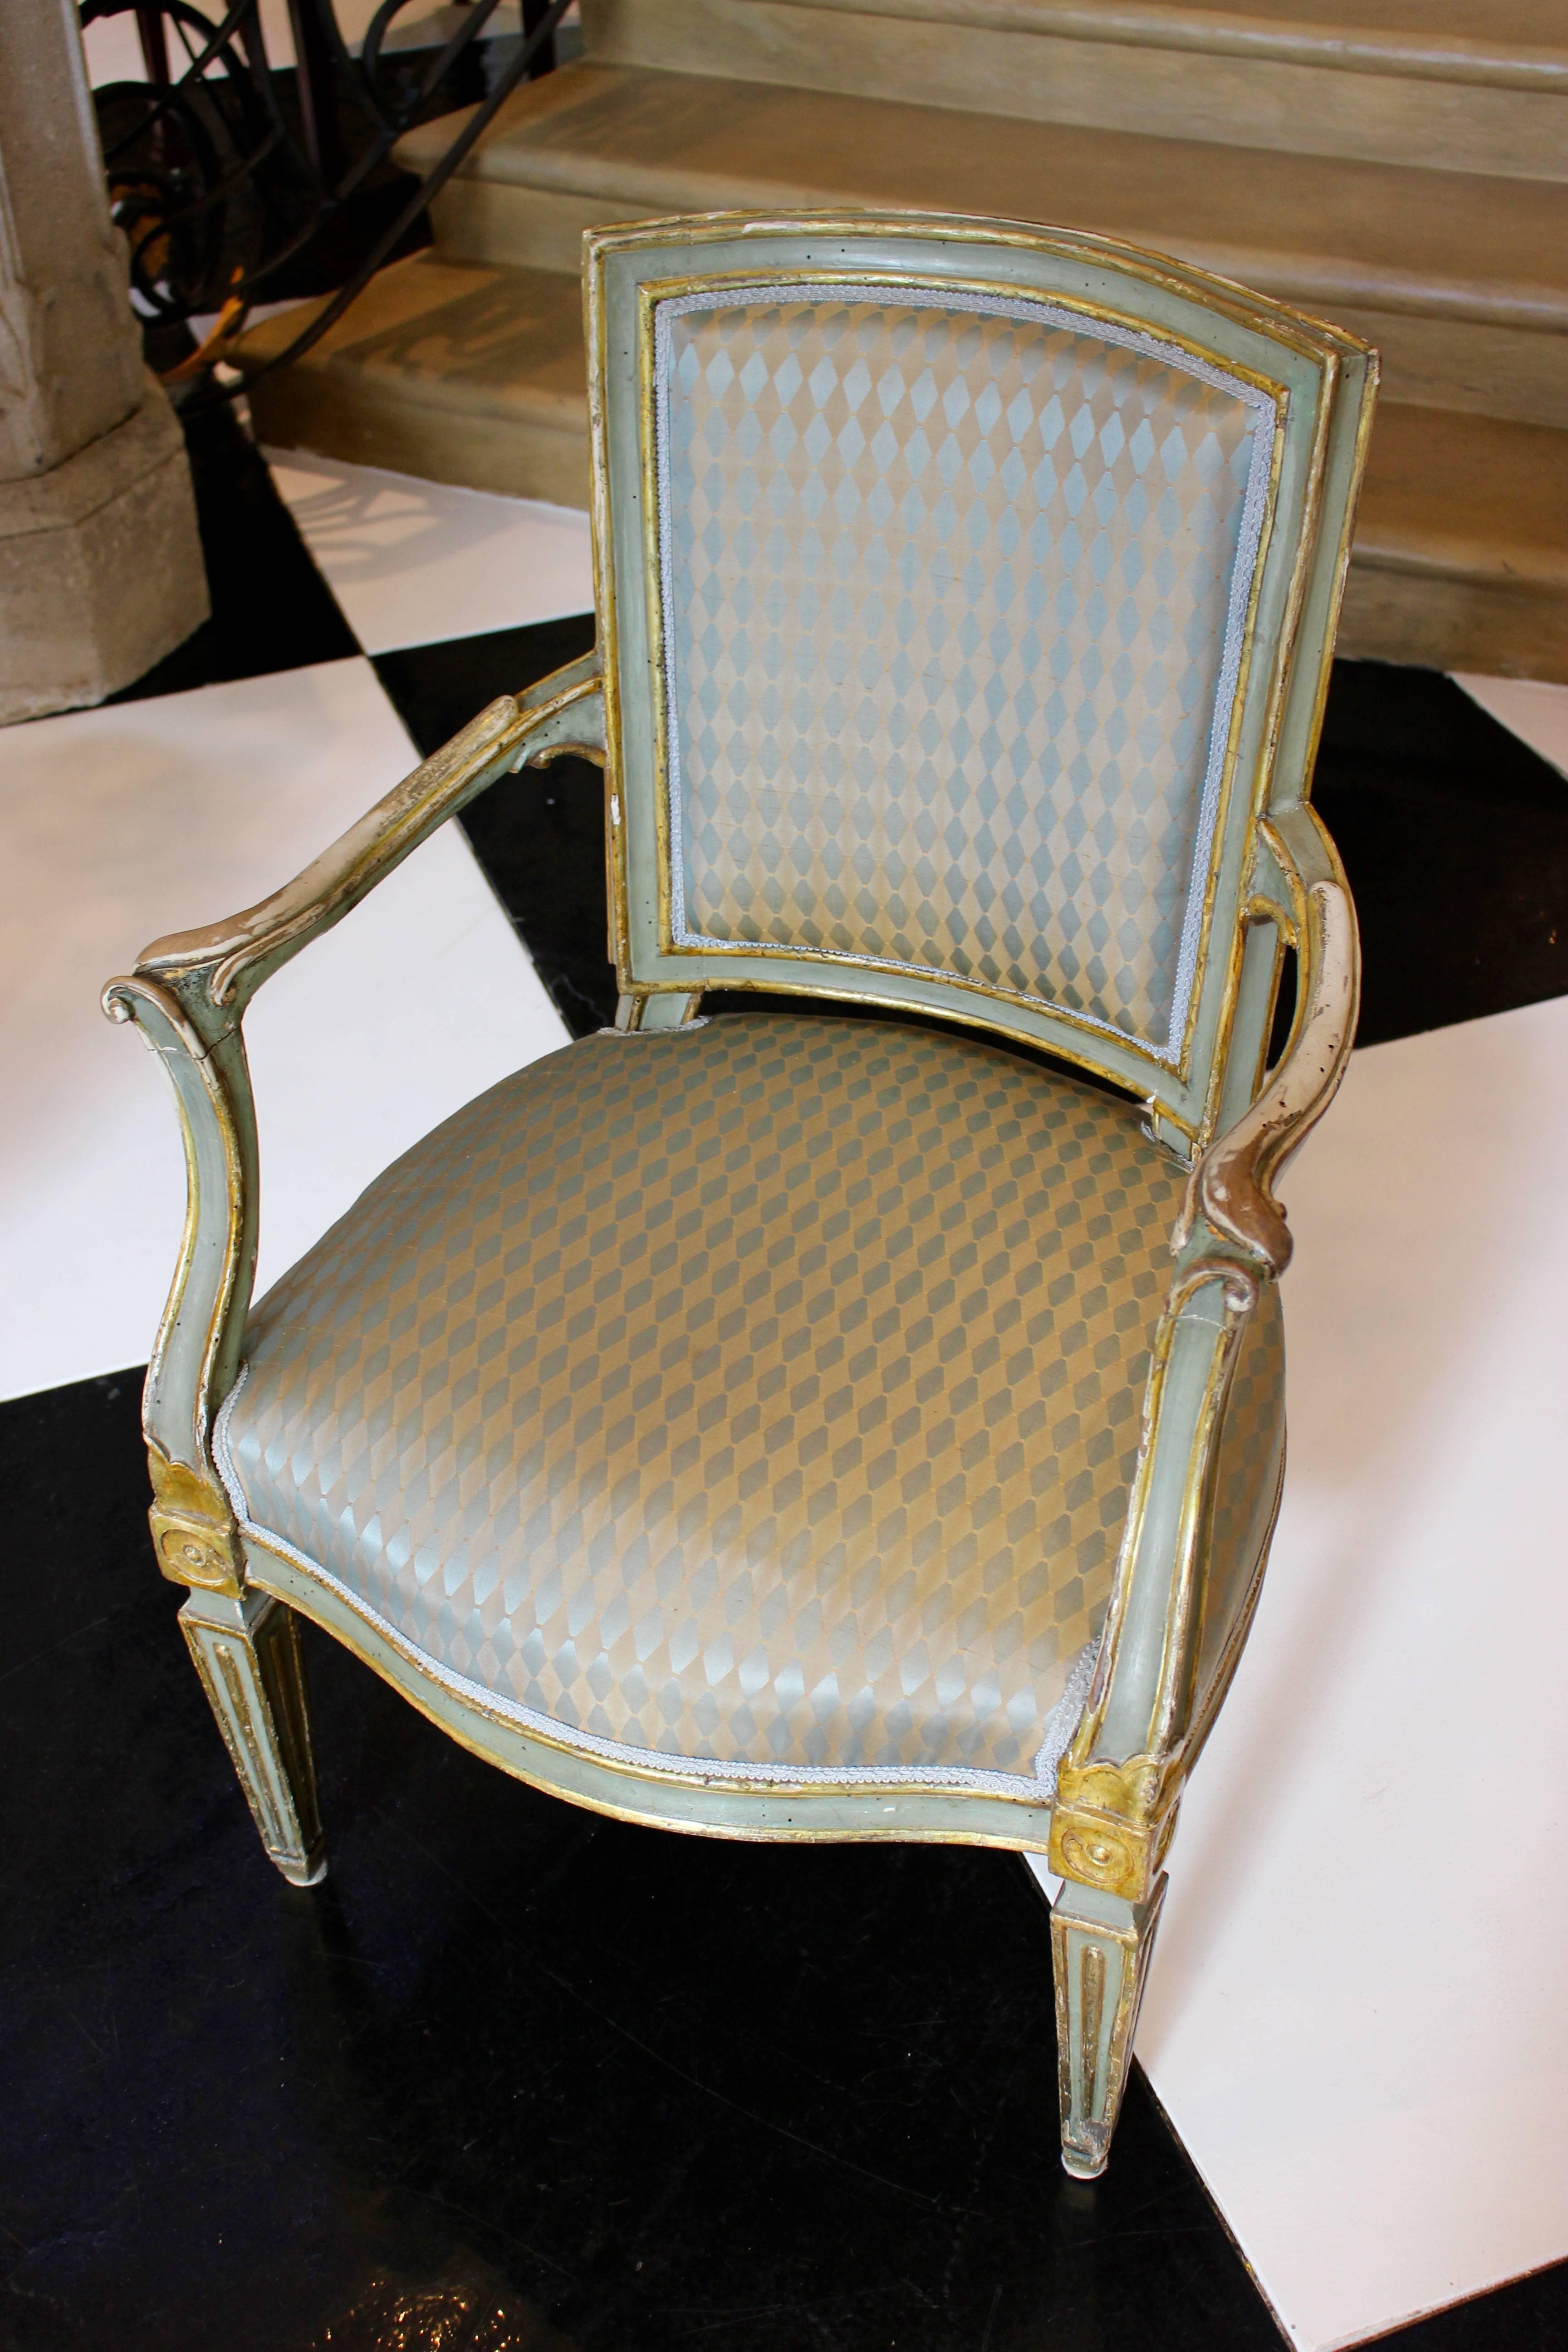 Ein Paar italienische, bemalte und paketvergoldete Sessel aus dem späten 18. Jahrhundert mit gepolsterten Rückenlehnen, nach außen gebogenen Armlehnen, vergoldeten Medaillons, kannelierten, spitz zulaufenden Beinen und Polstern. Dieses exquisite und